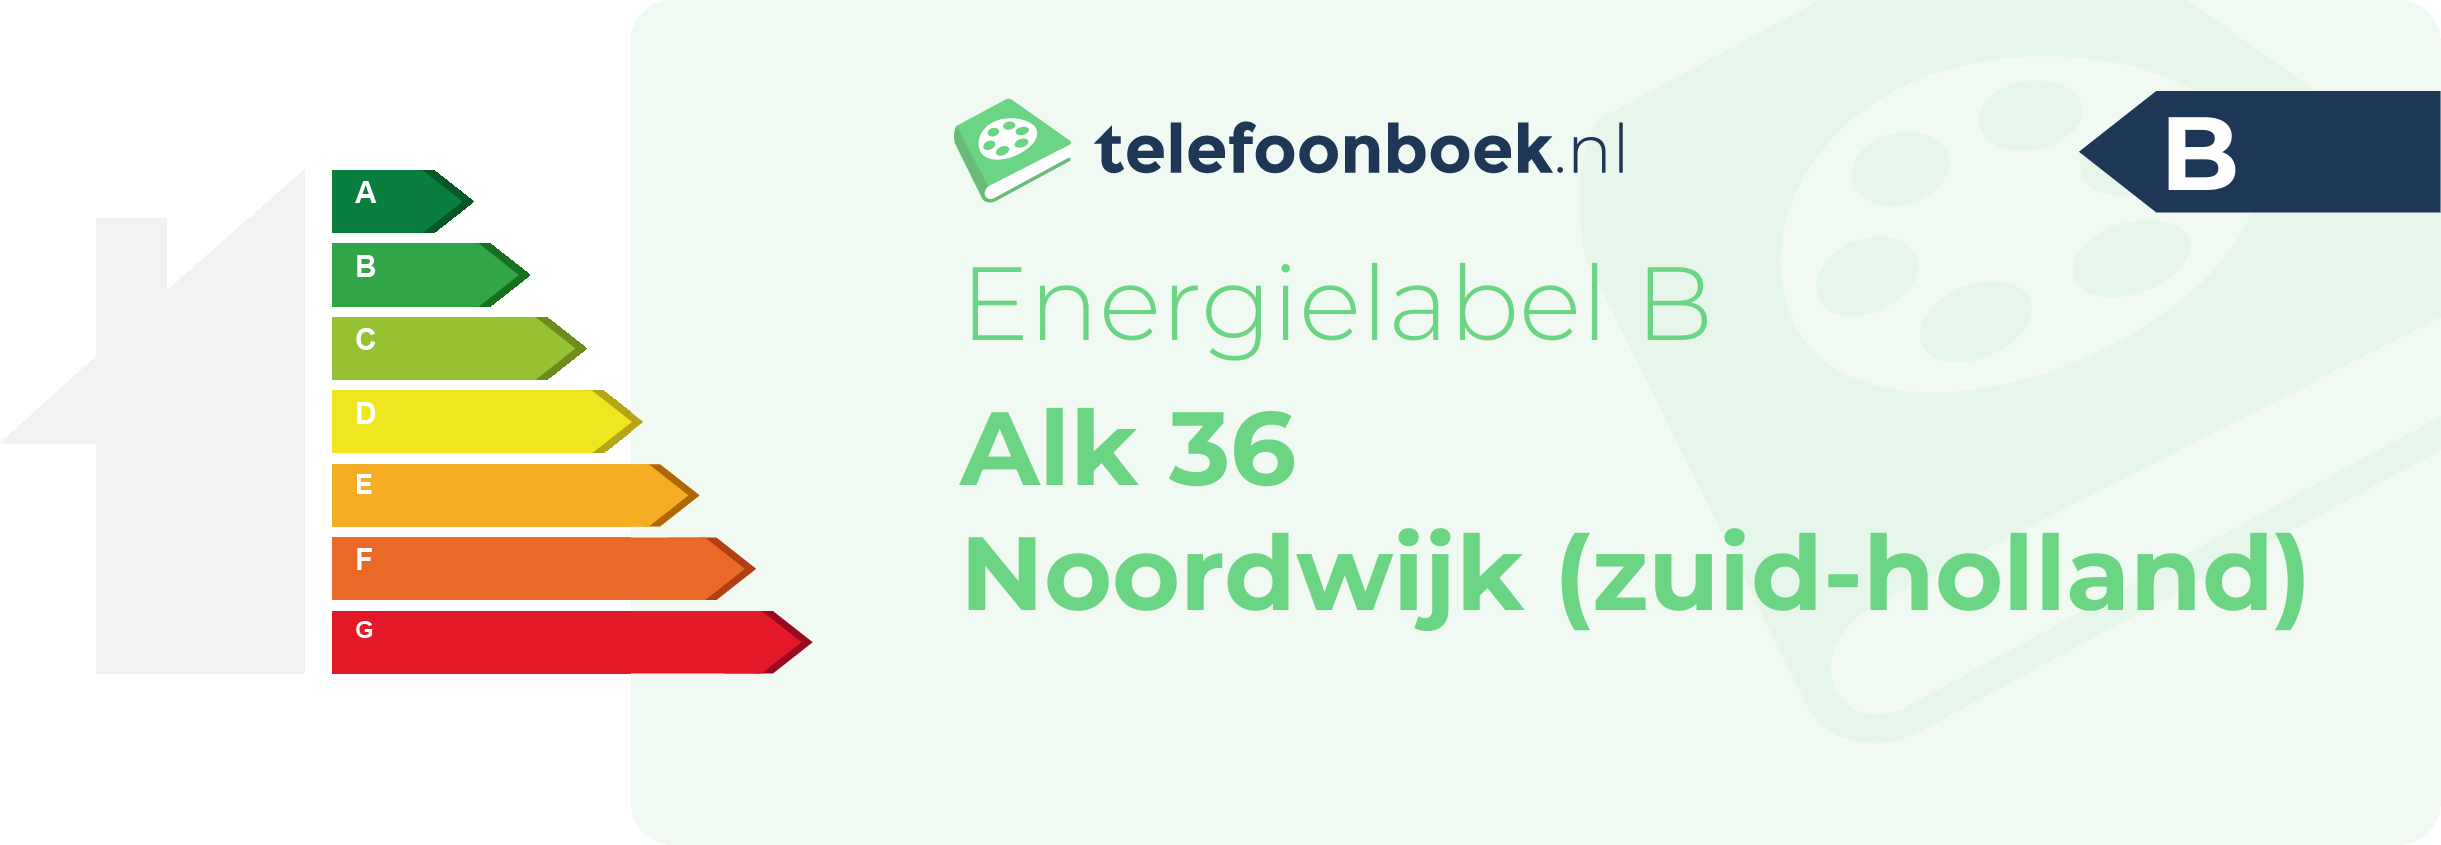 Energielabel Alk 36 Noordwijk (Zuid-Holland)